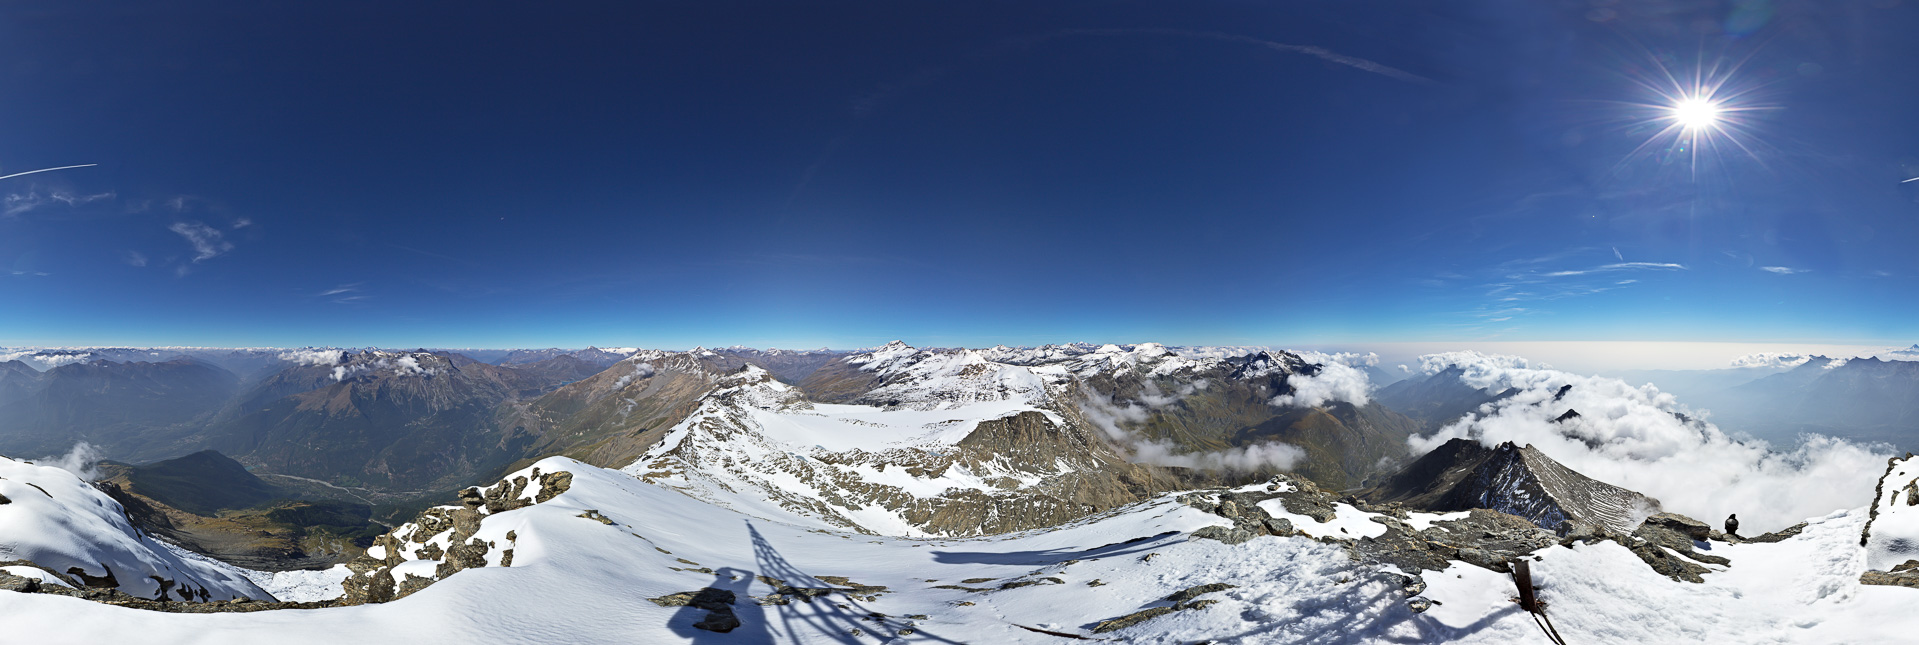 Ein Panorama ohne Gipfelmadonna mit Tiefblicken und Fernsicht zur Dauphiné, Monte Viso und den Walliser Alpen.